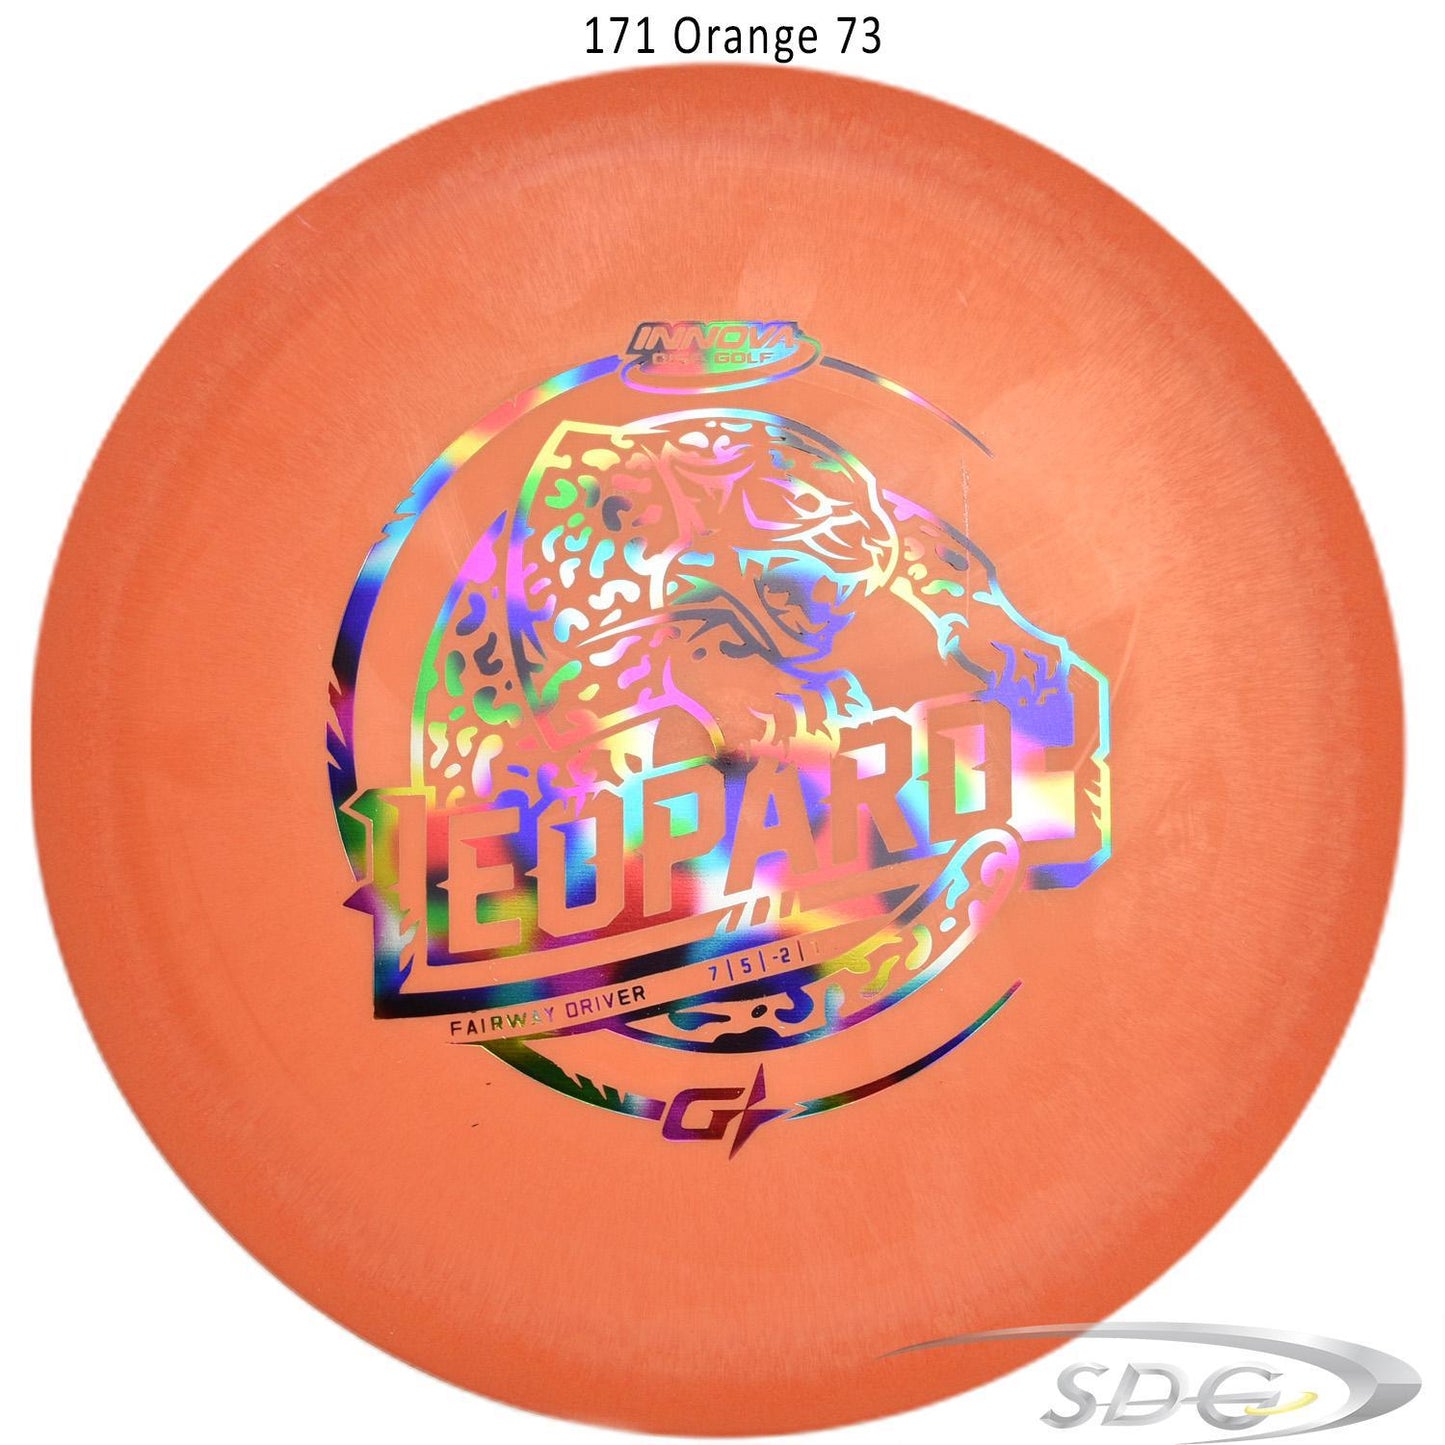 innova-gstar-leopard3-disc-golf-fairway-driver 171 Orange 73 